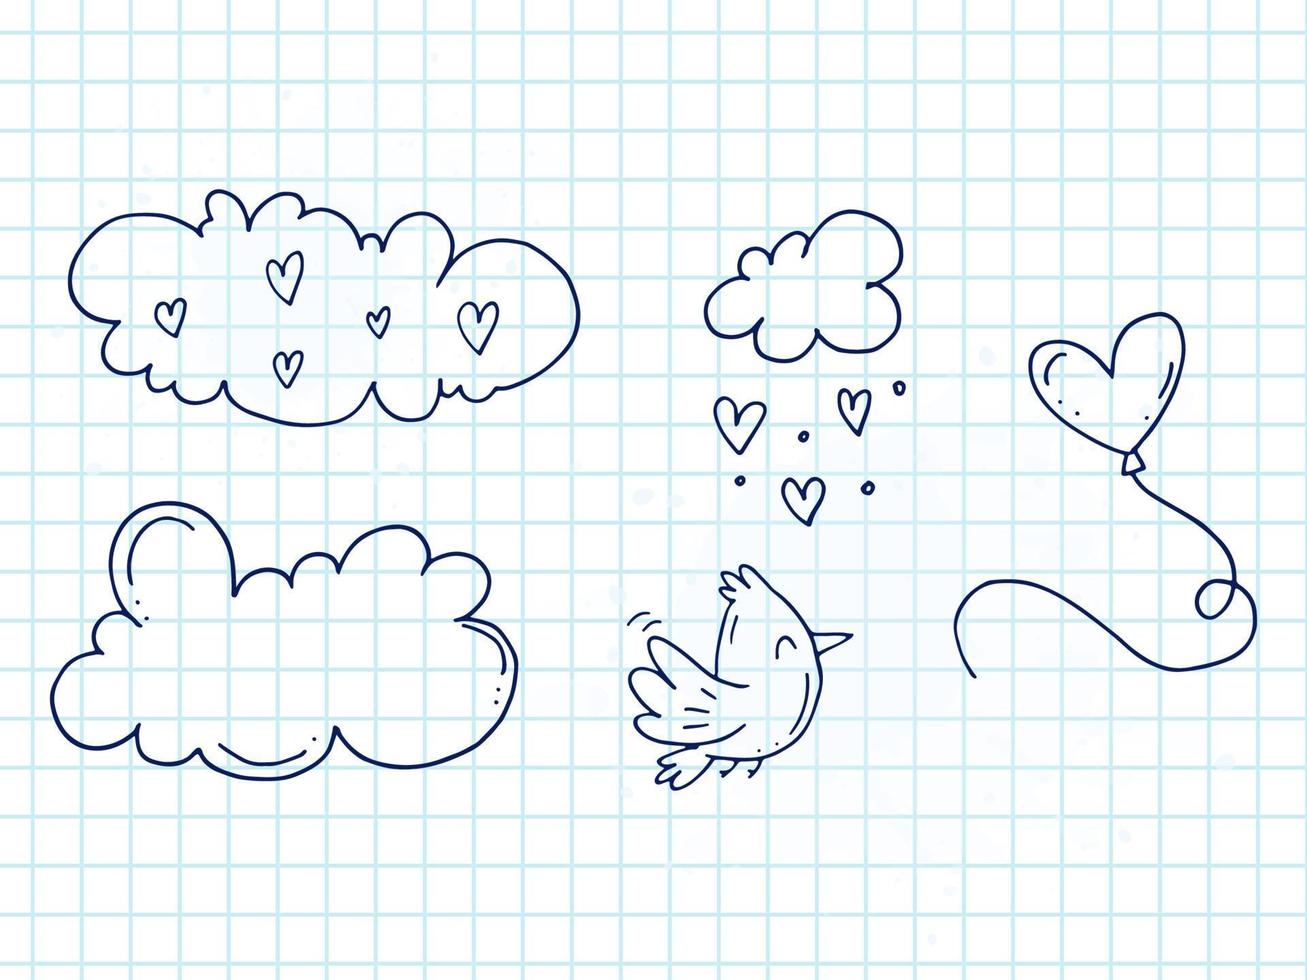 conjunto de elementos de doodle bonitos desenhados à mão sobre o amor. adesivos de mensagem para aplicativos. ícones para dia dos namorados, eventos românticos e casamento. um caderno quadriculado. um pássaro com balão no céu com nuvens. vetor